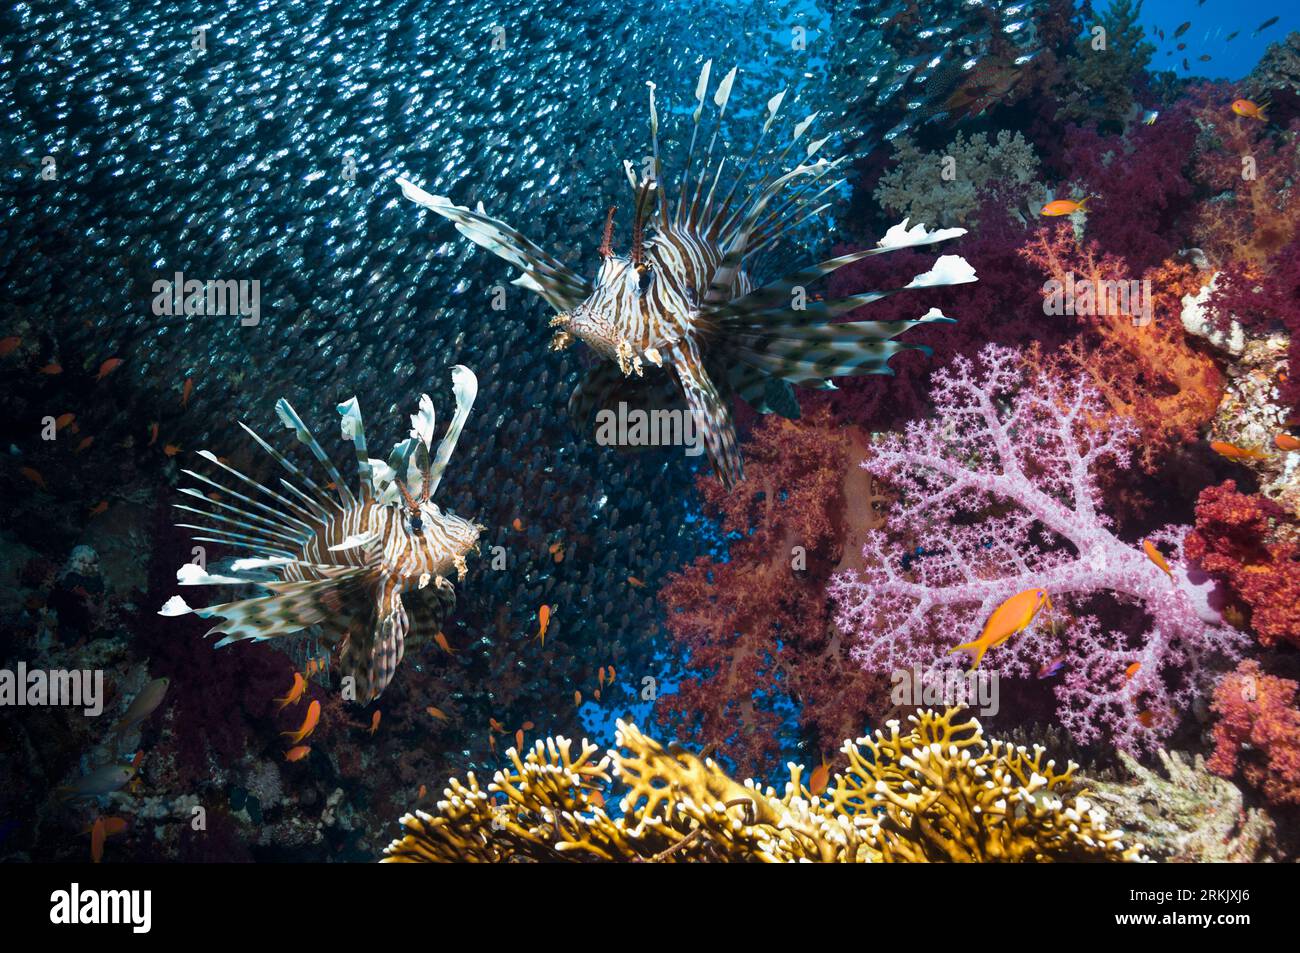 Décor de récif corallien avec une paire de lionfish rouge (Pterois volitans), des coraux mous (Dendronephthya sp) et une école de balayeuses pygmées (Parapriacanthus gue Banque D'Images